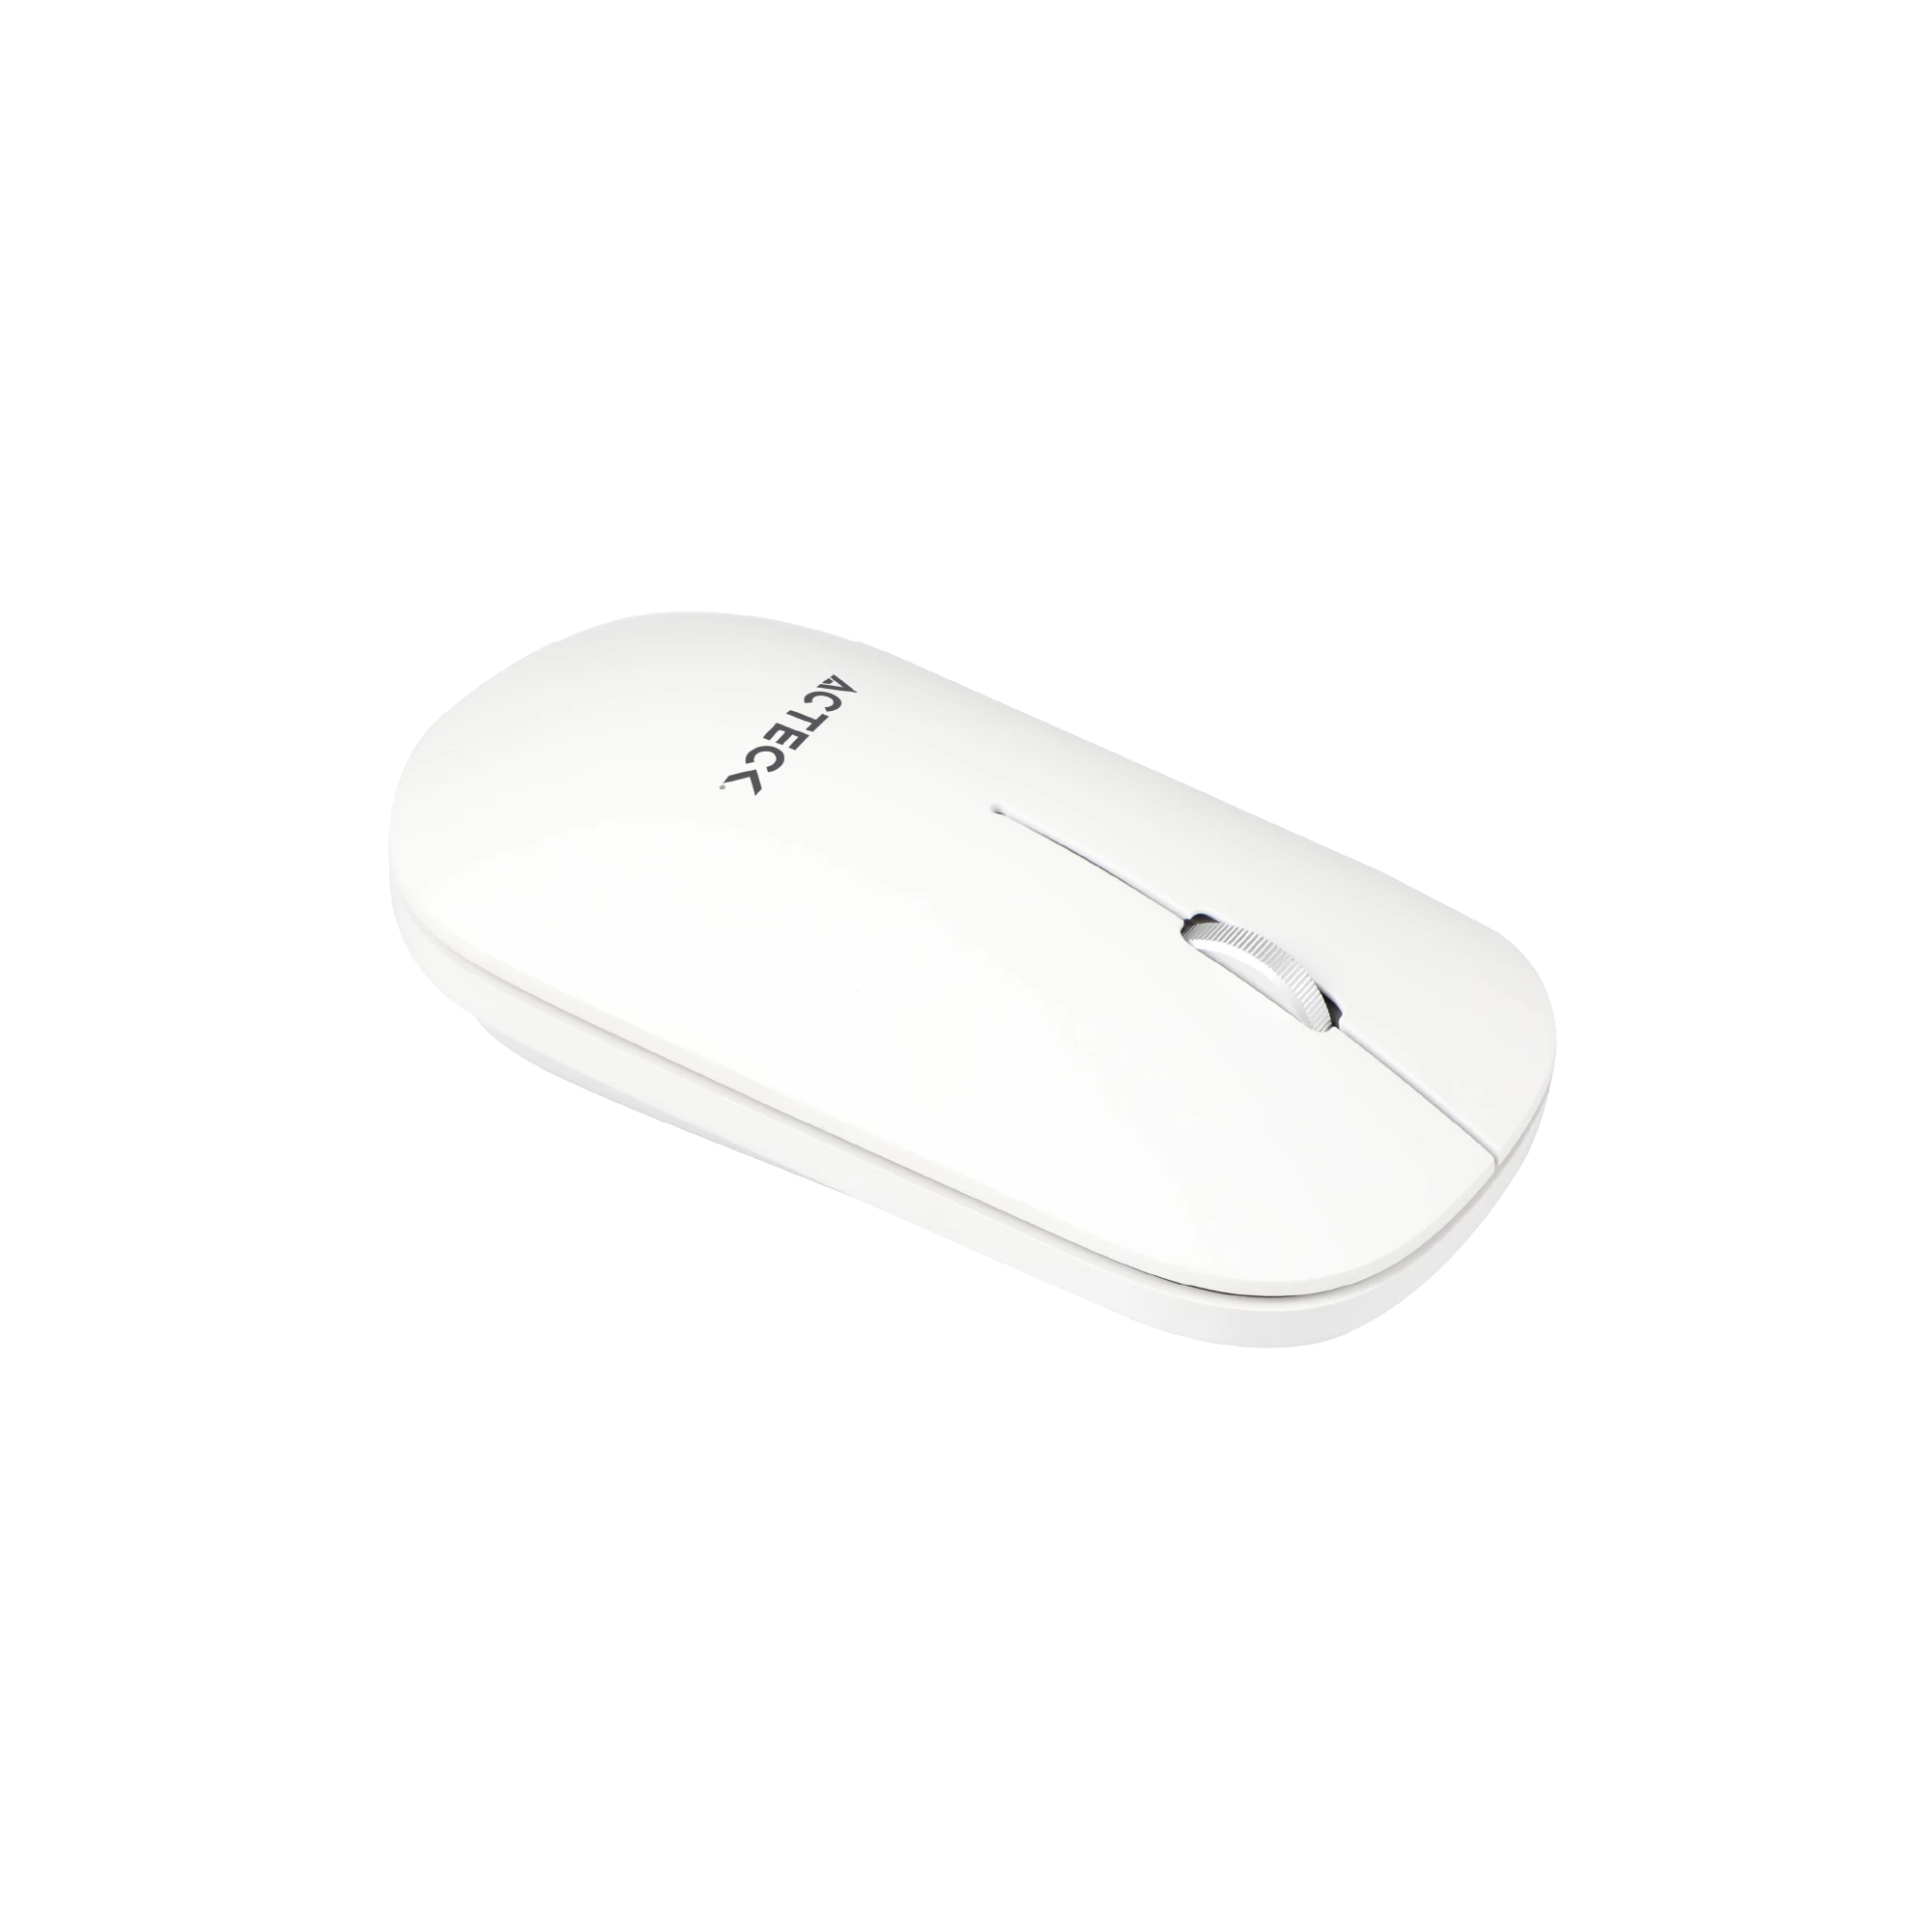 Combo Creator Virtuos Silk MK720 2 en 1 / Teclado Ergonómico + Mouse Vertical/ Inalámbrico 2.4 GHz+ Recarga USB C / Blanco